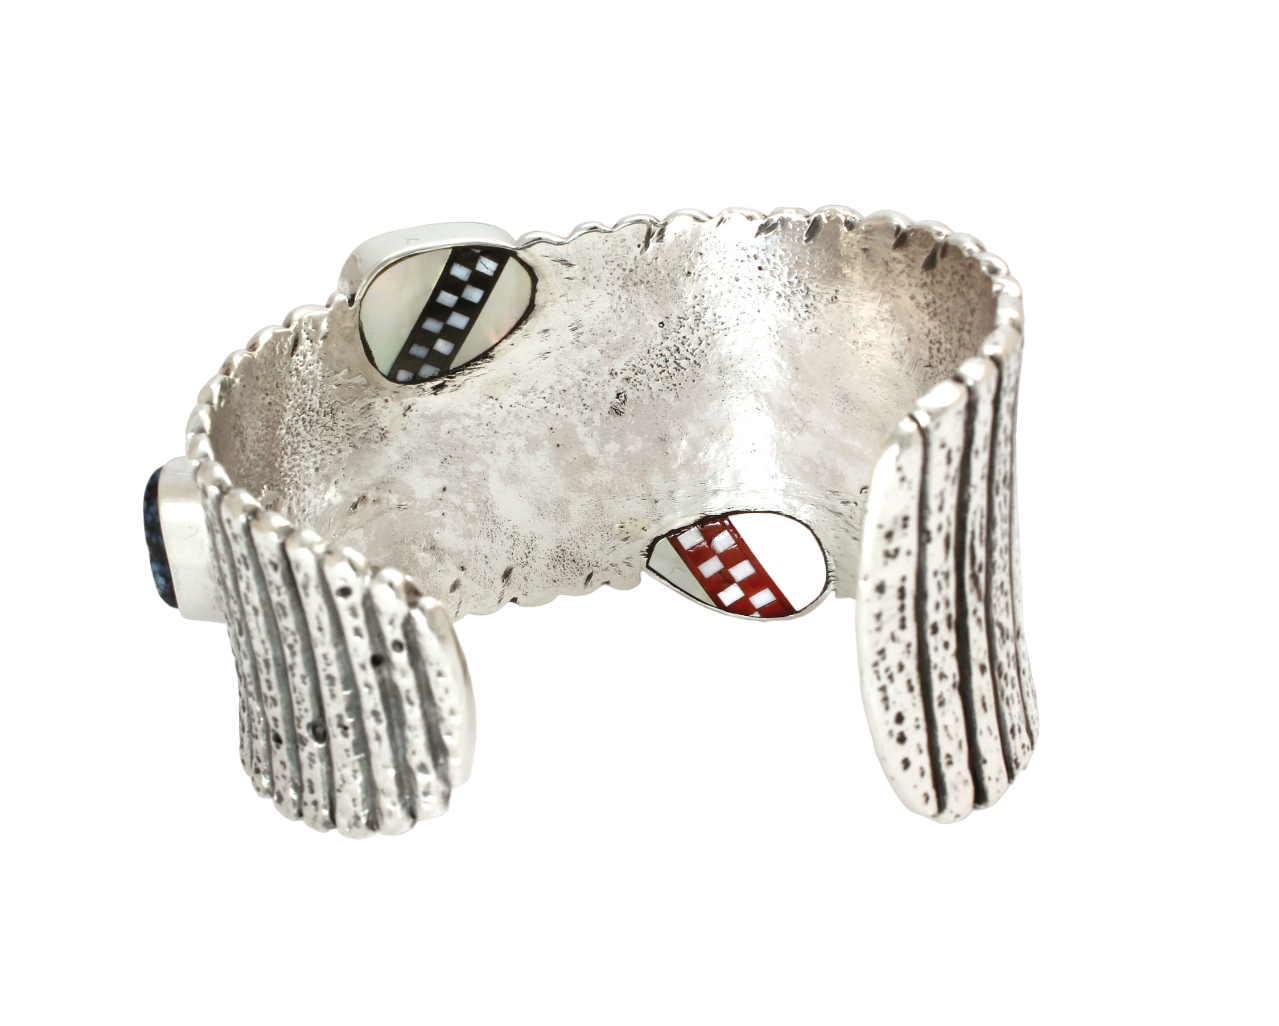 1970s Tapered Silver Cuff Bracelet-Jewelry-Jesse Monongye-Sorrel Sky Gallery